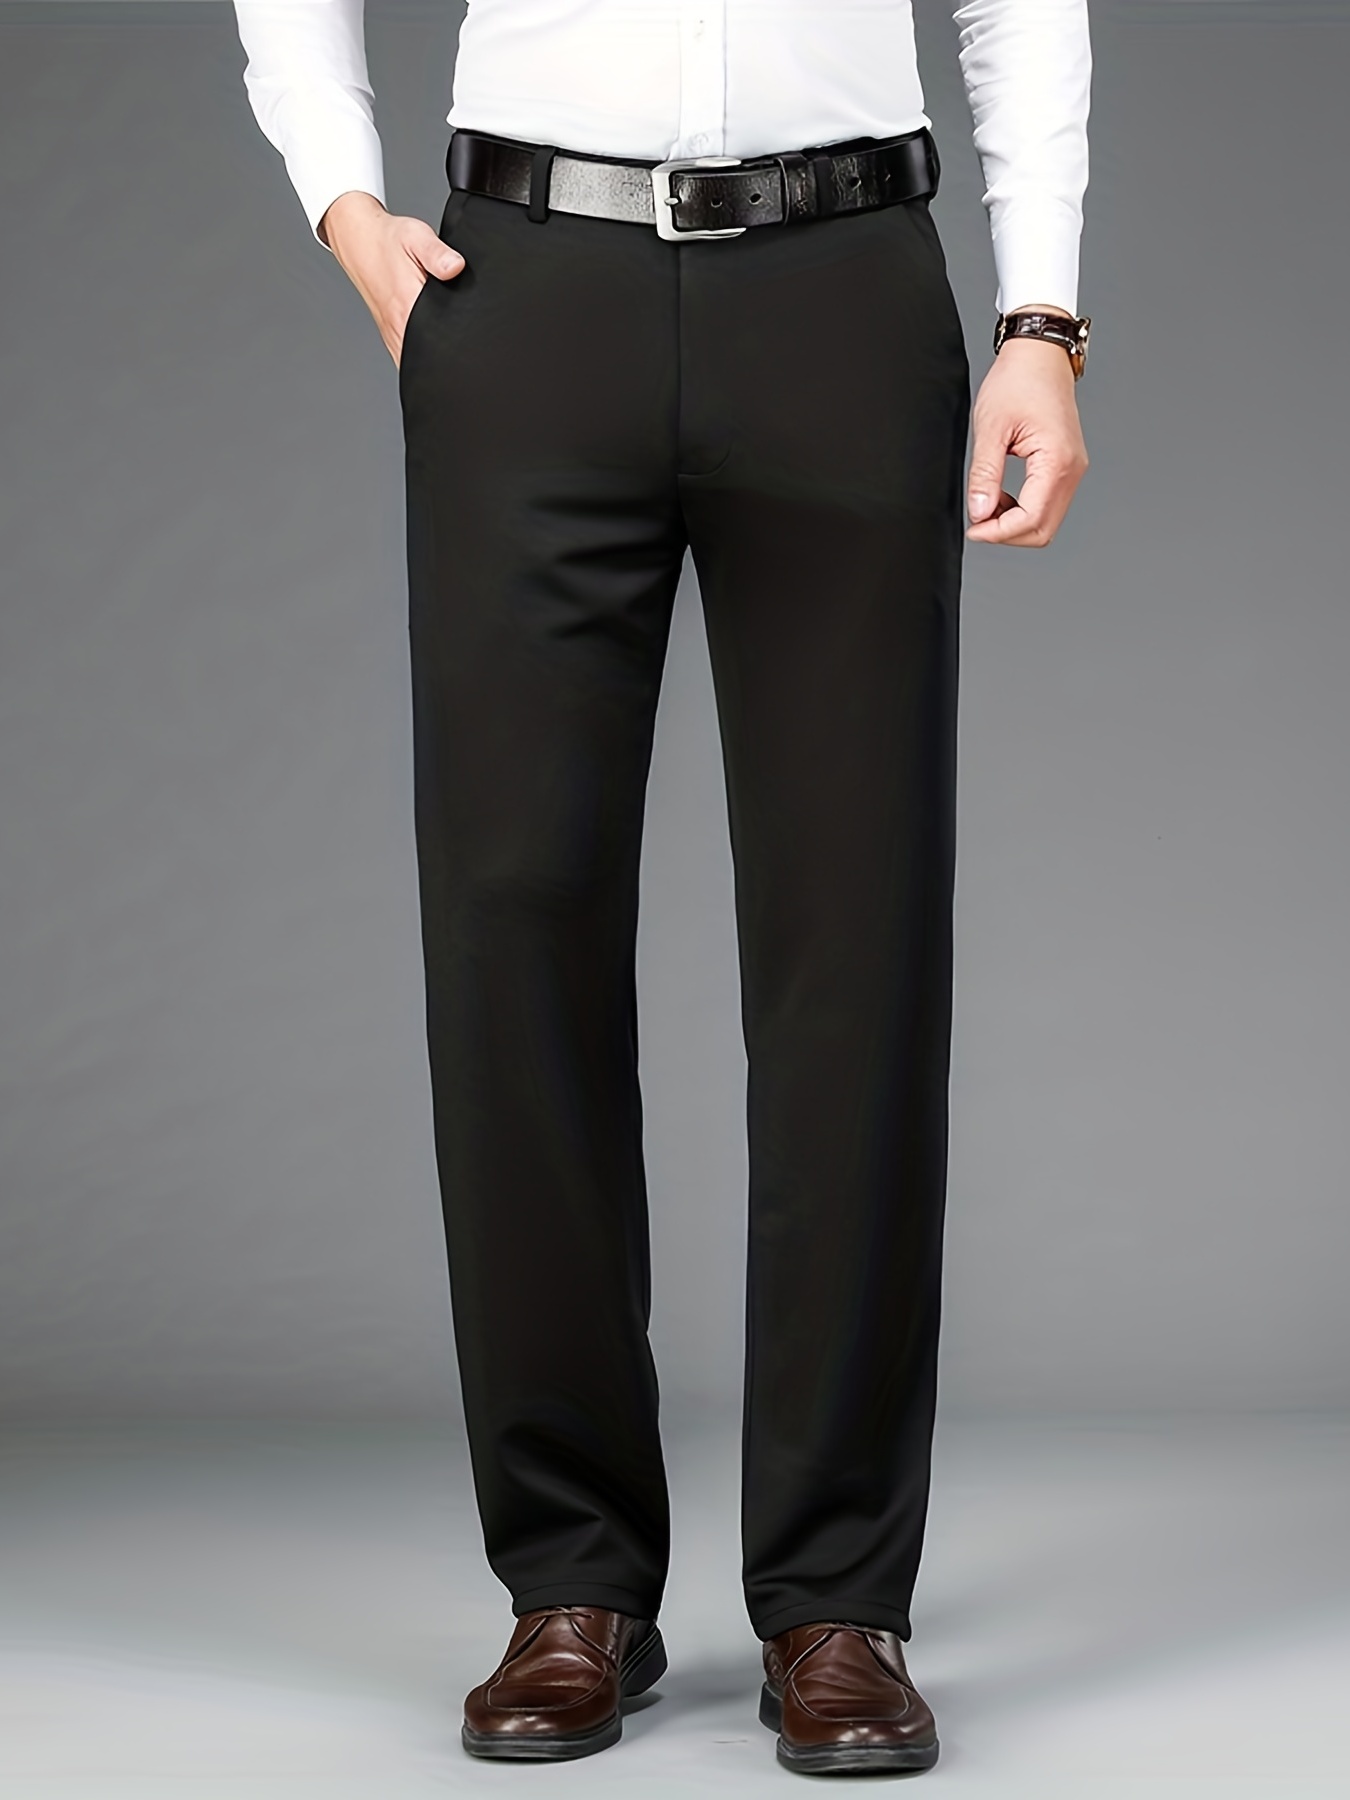 Classic Pants Black Wool Twill | DIOR-hkpdtq2012.edu.vn